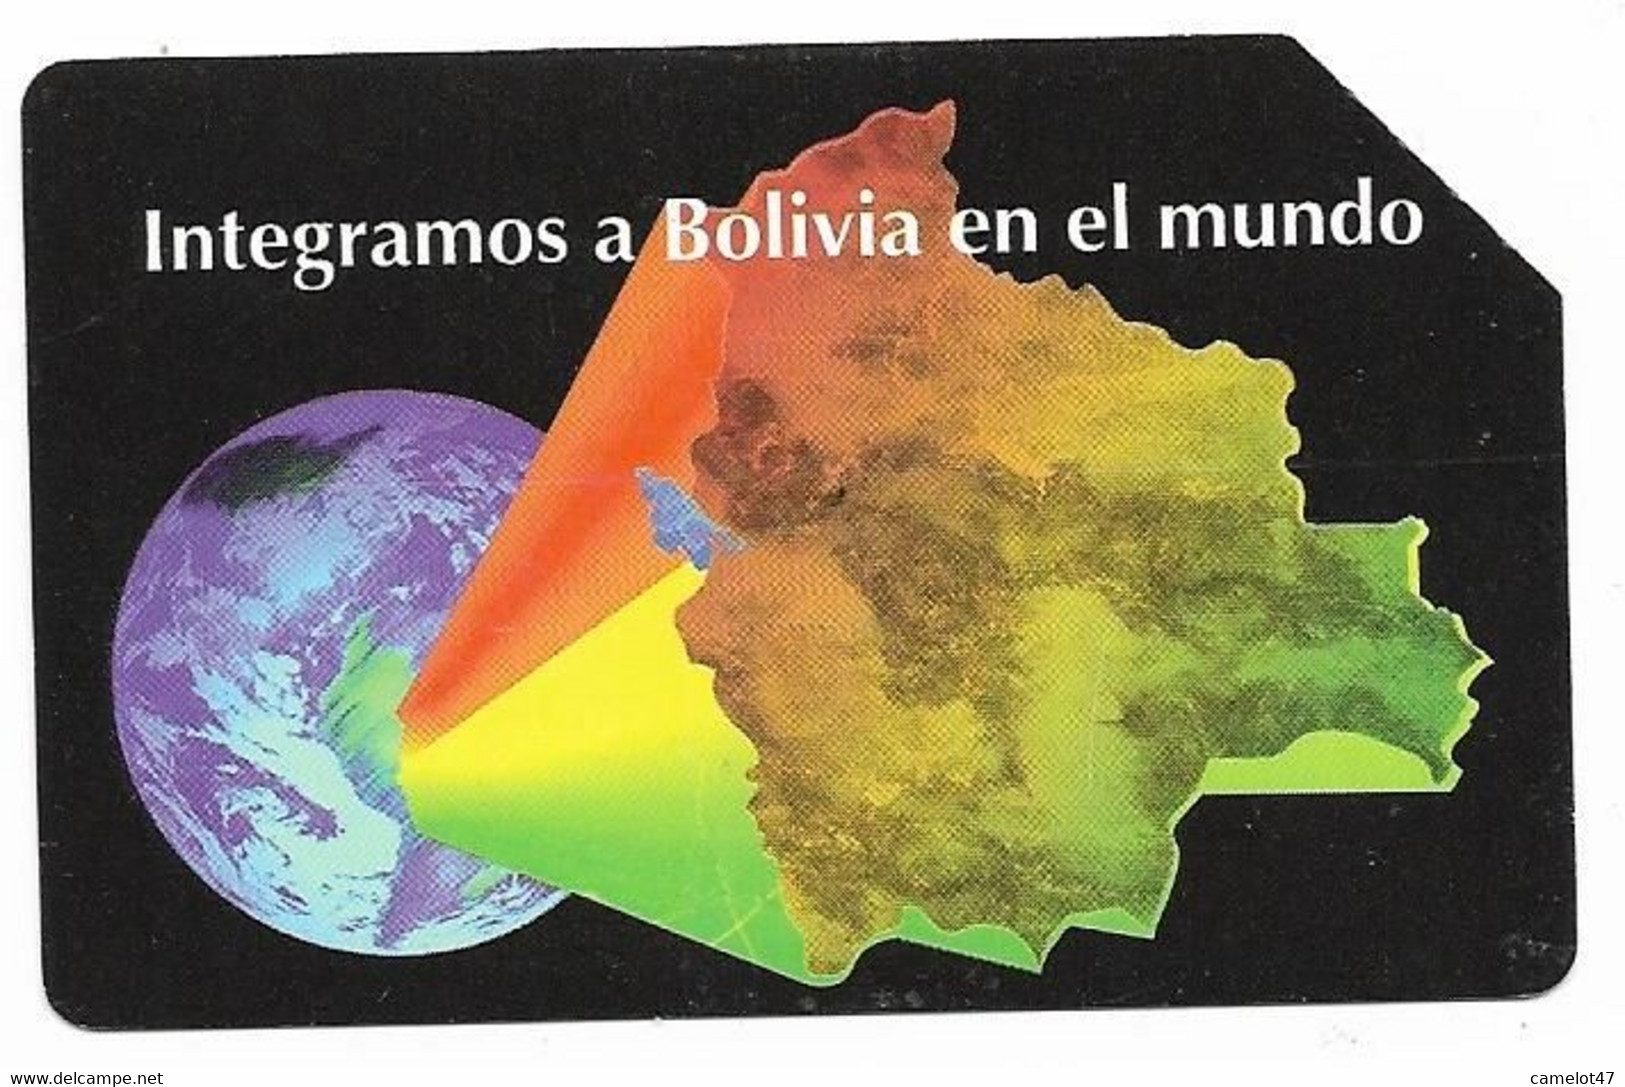 Bolivia, Entel, Urmet Used Phone Card, No Value, Collectors Item, # Bolivia-34 - Bolivië